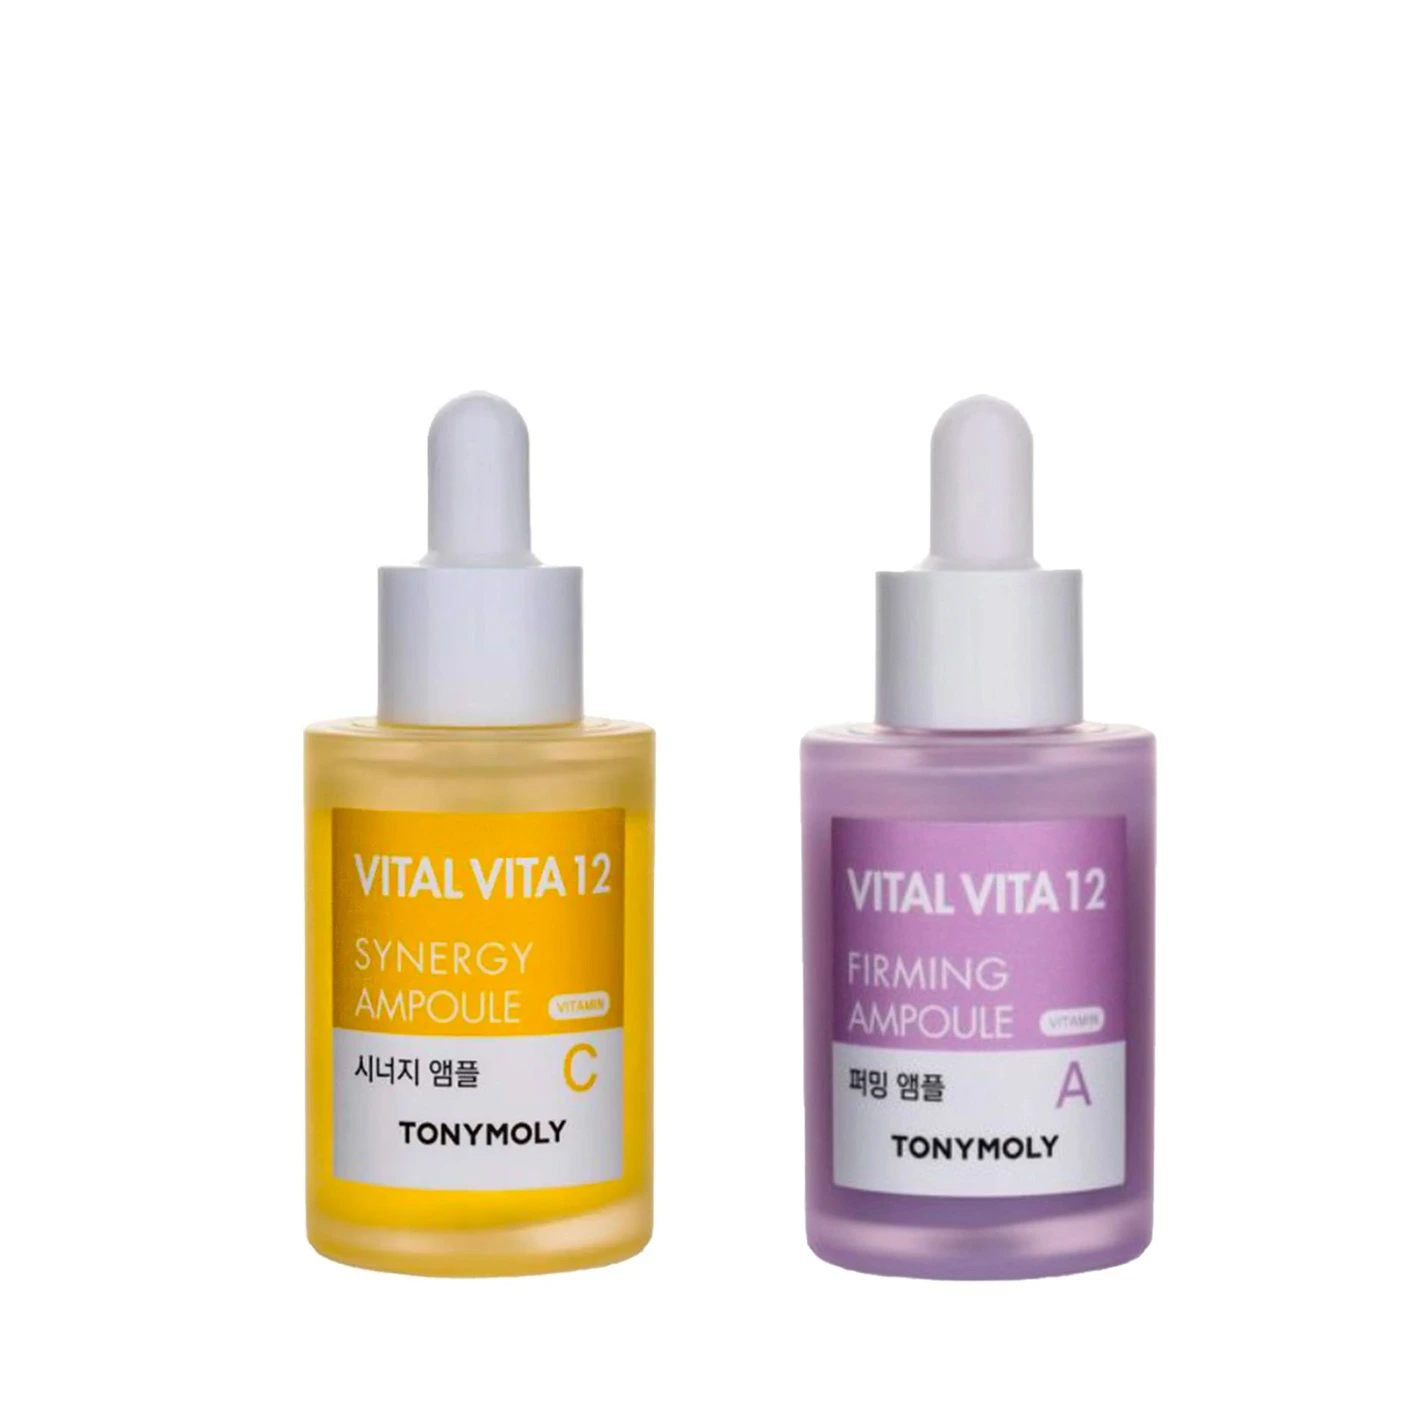 זוג אמפולות לעור חיוור ועייף VITAL VITA 12